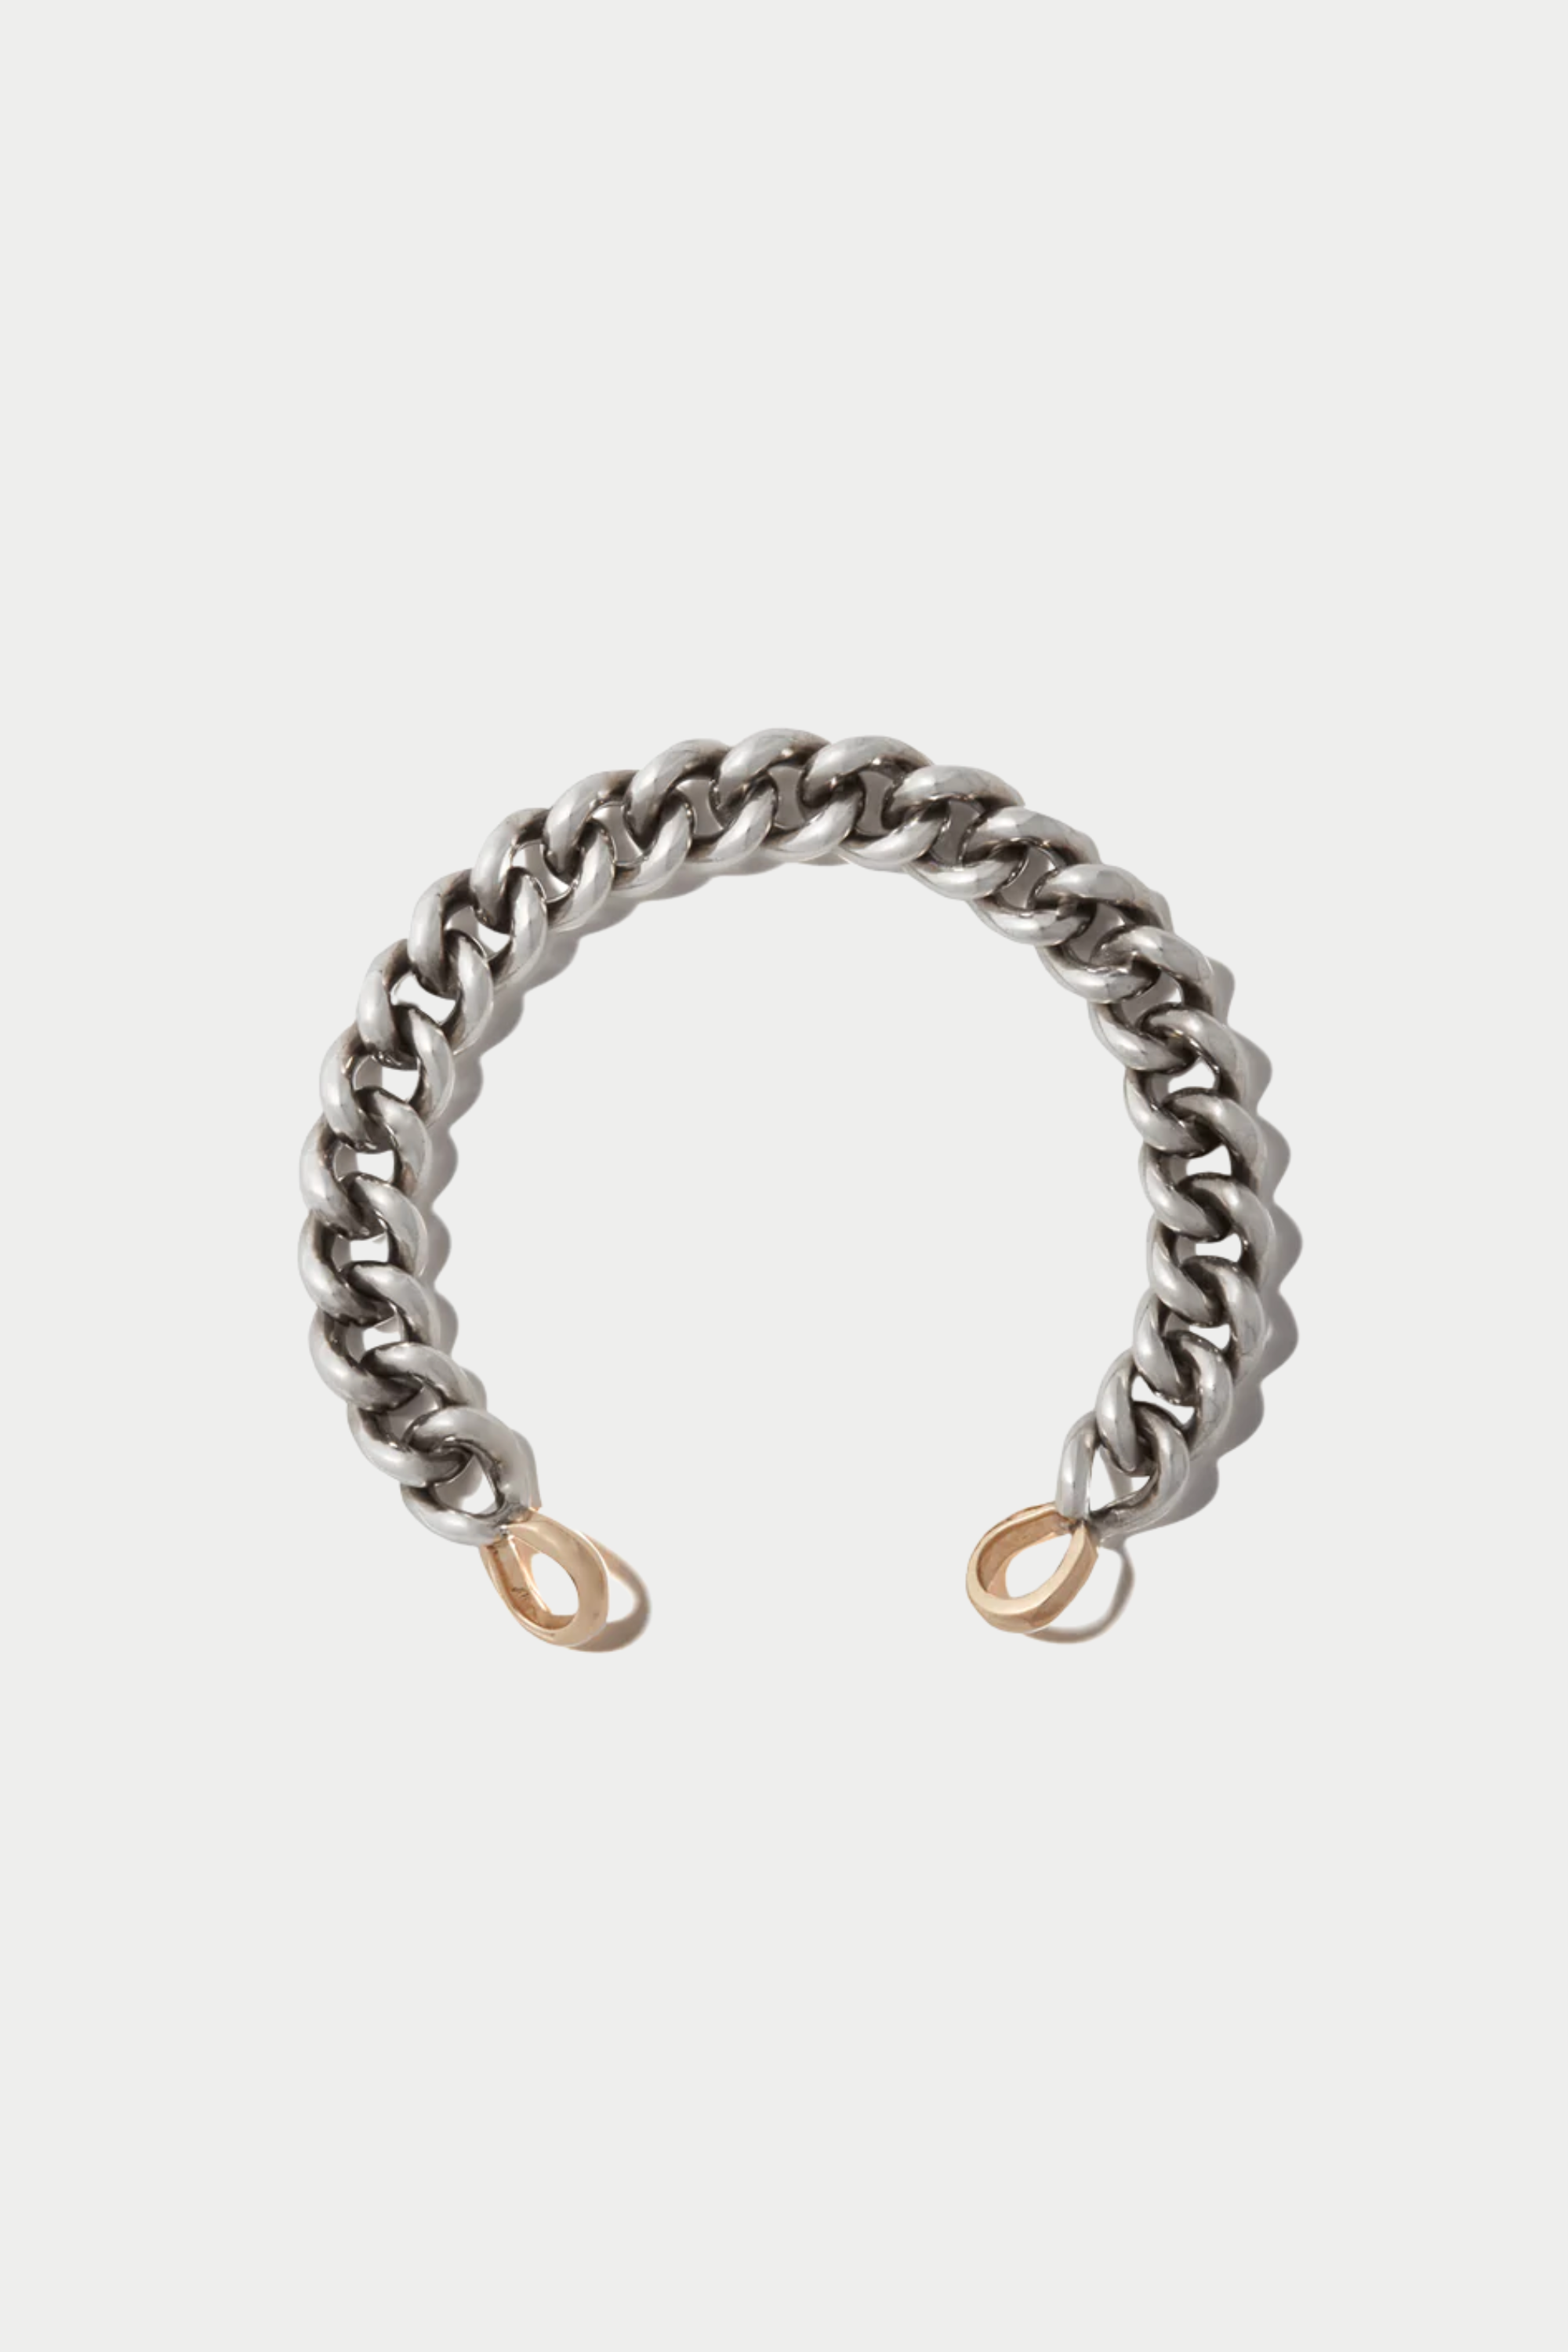 MiniMega Curb Chain Bracelet, Silver & Yellow Gold Loops – Kick Pleat